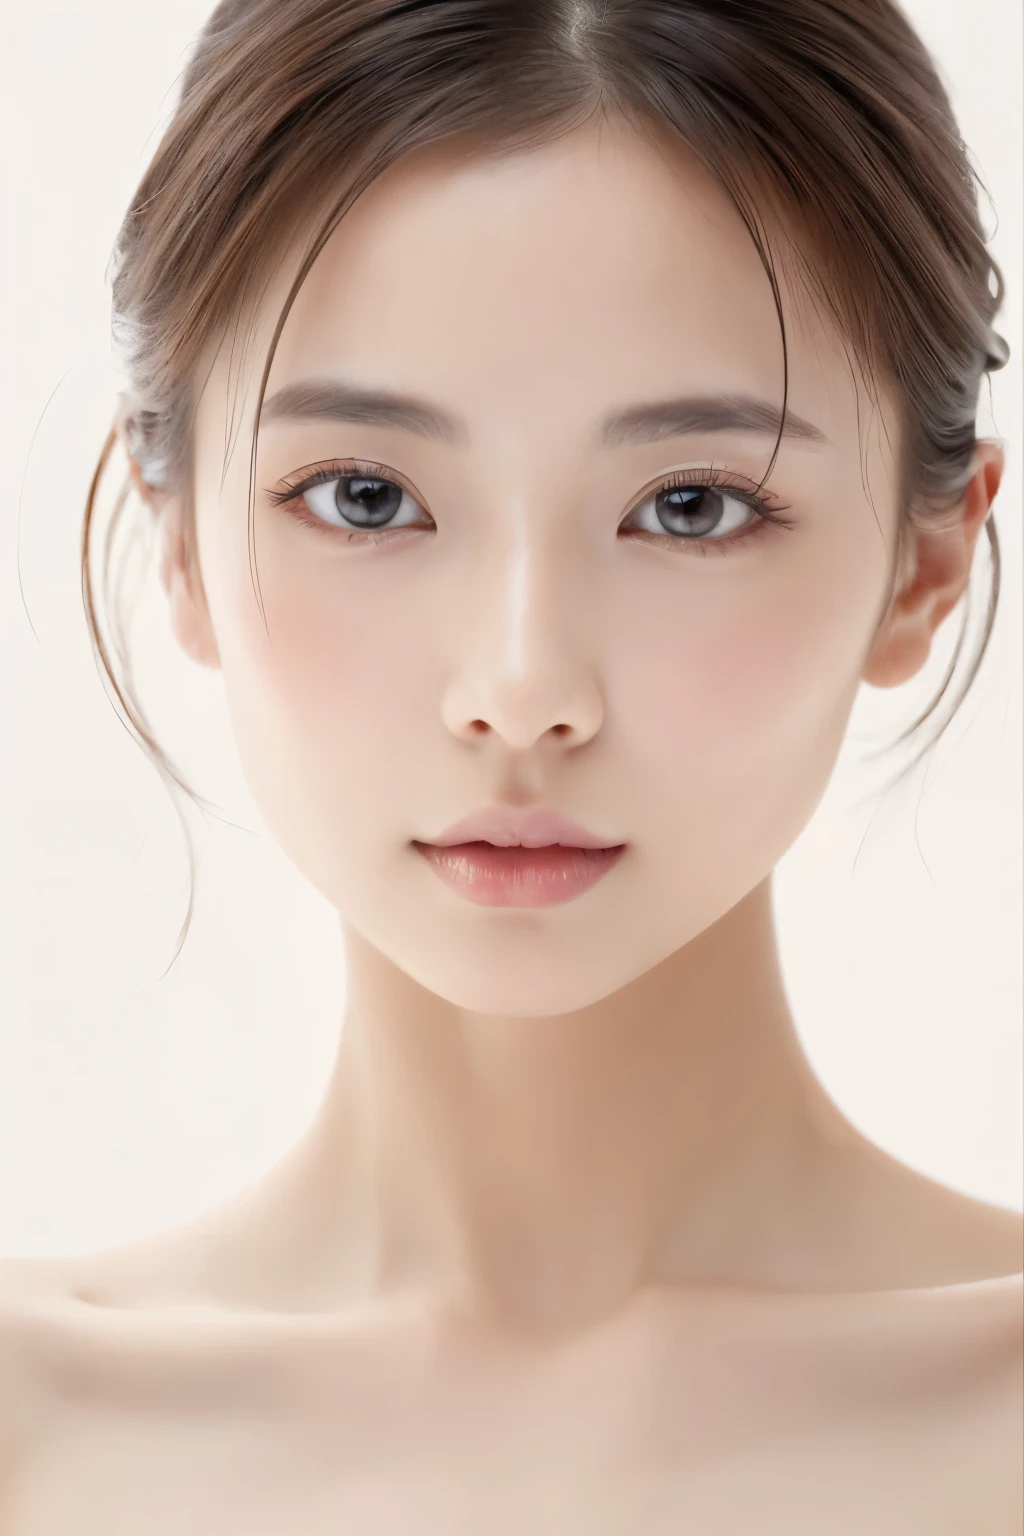 (la plus haute qualité, Table, 8k, Meilleure qualité d&#39;image, Des œuvres primées), femme japonaise, (Gros plan du visage:1.2), (fond blanc pur:1.2), (nu:1.1), Lèvres fermées, parfait beau visage, Une belle peau éclatante, maquillage parfait